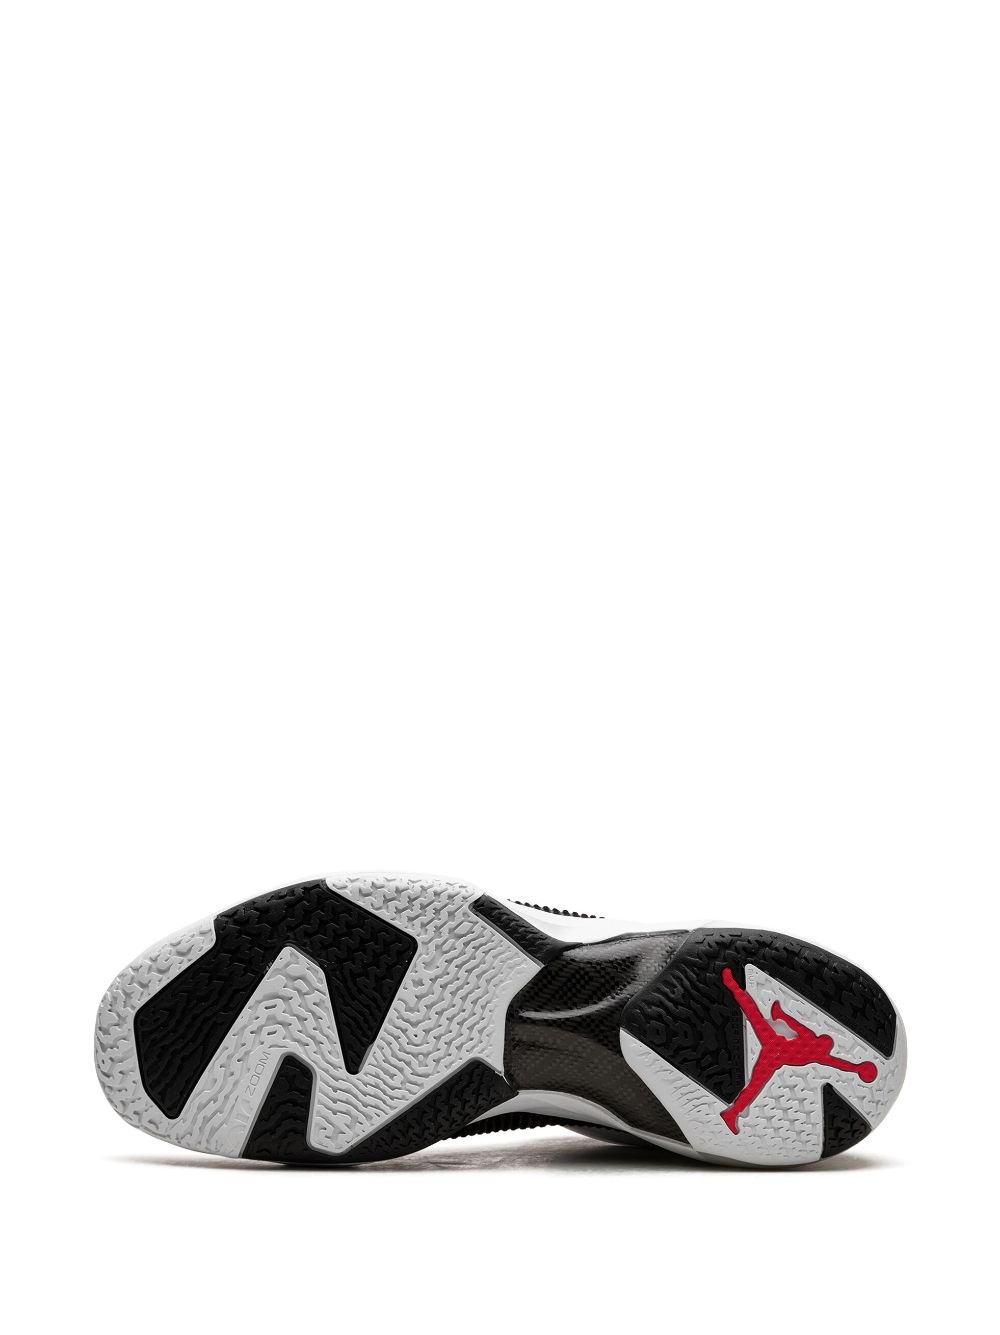 Air Jordan 37 Low "Siren Red" sneakers - 4